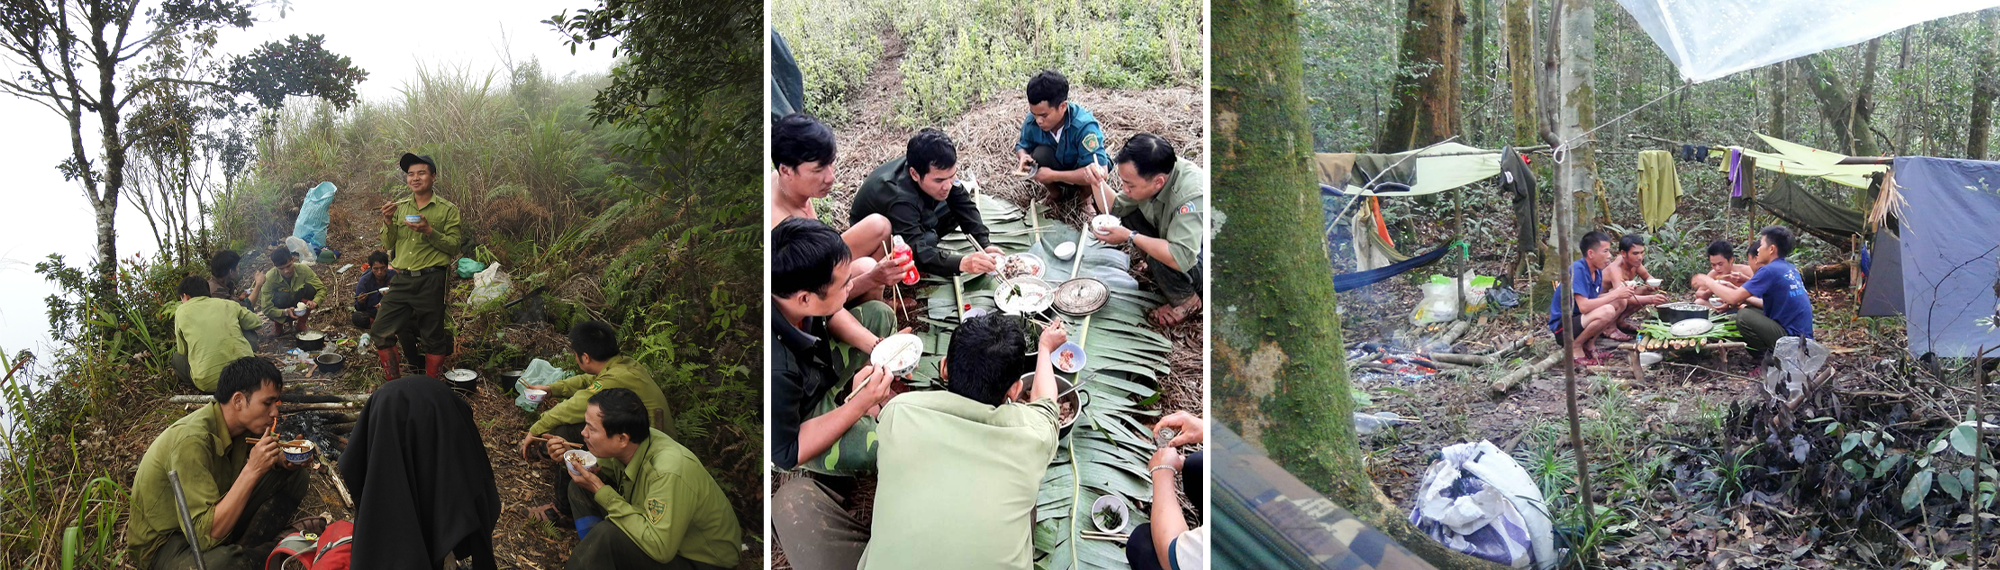 Bữa ăn trên đường làm nhiệm vụ của lực lượng chuyên trách bảo vệ rừng.